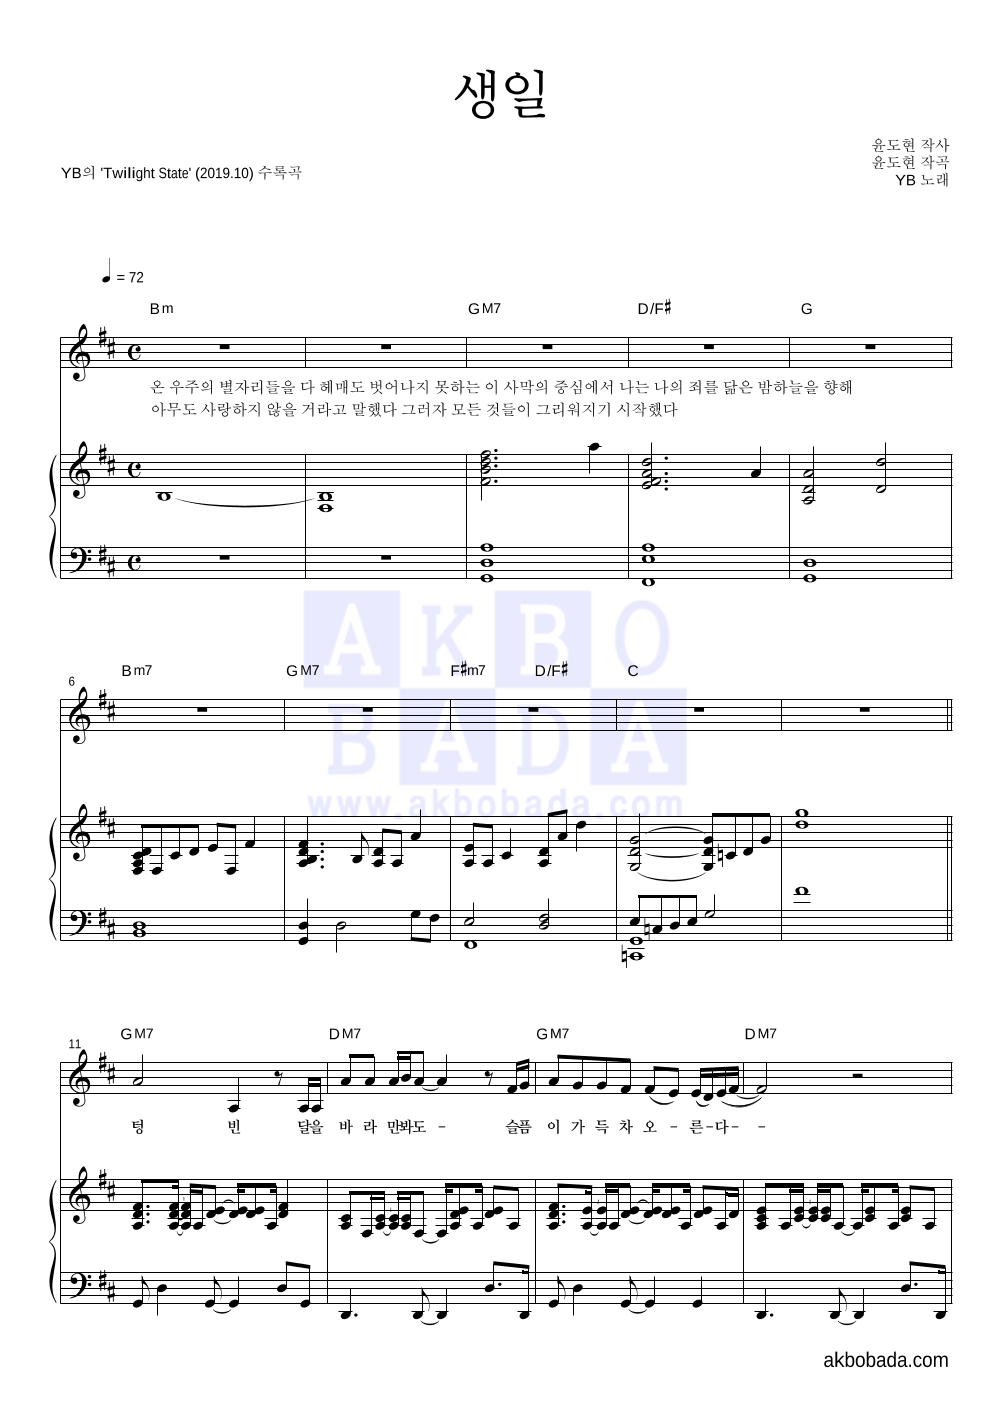 YB(윤도현 밴드) - 생일 피아노 3단 악보 